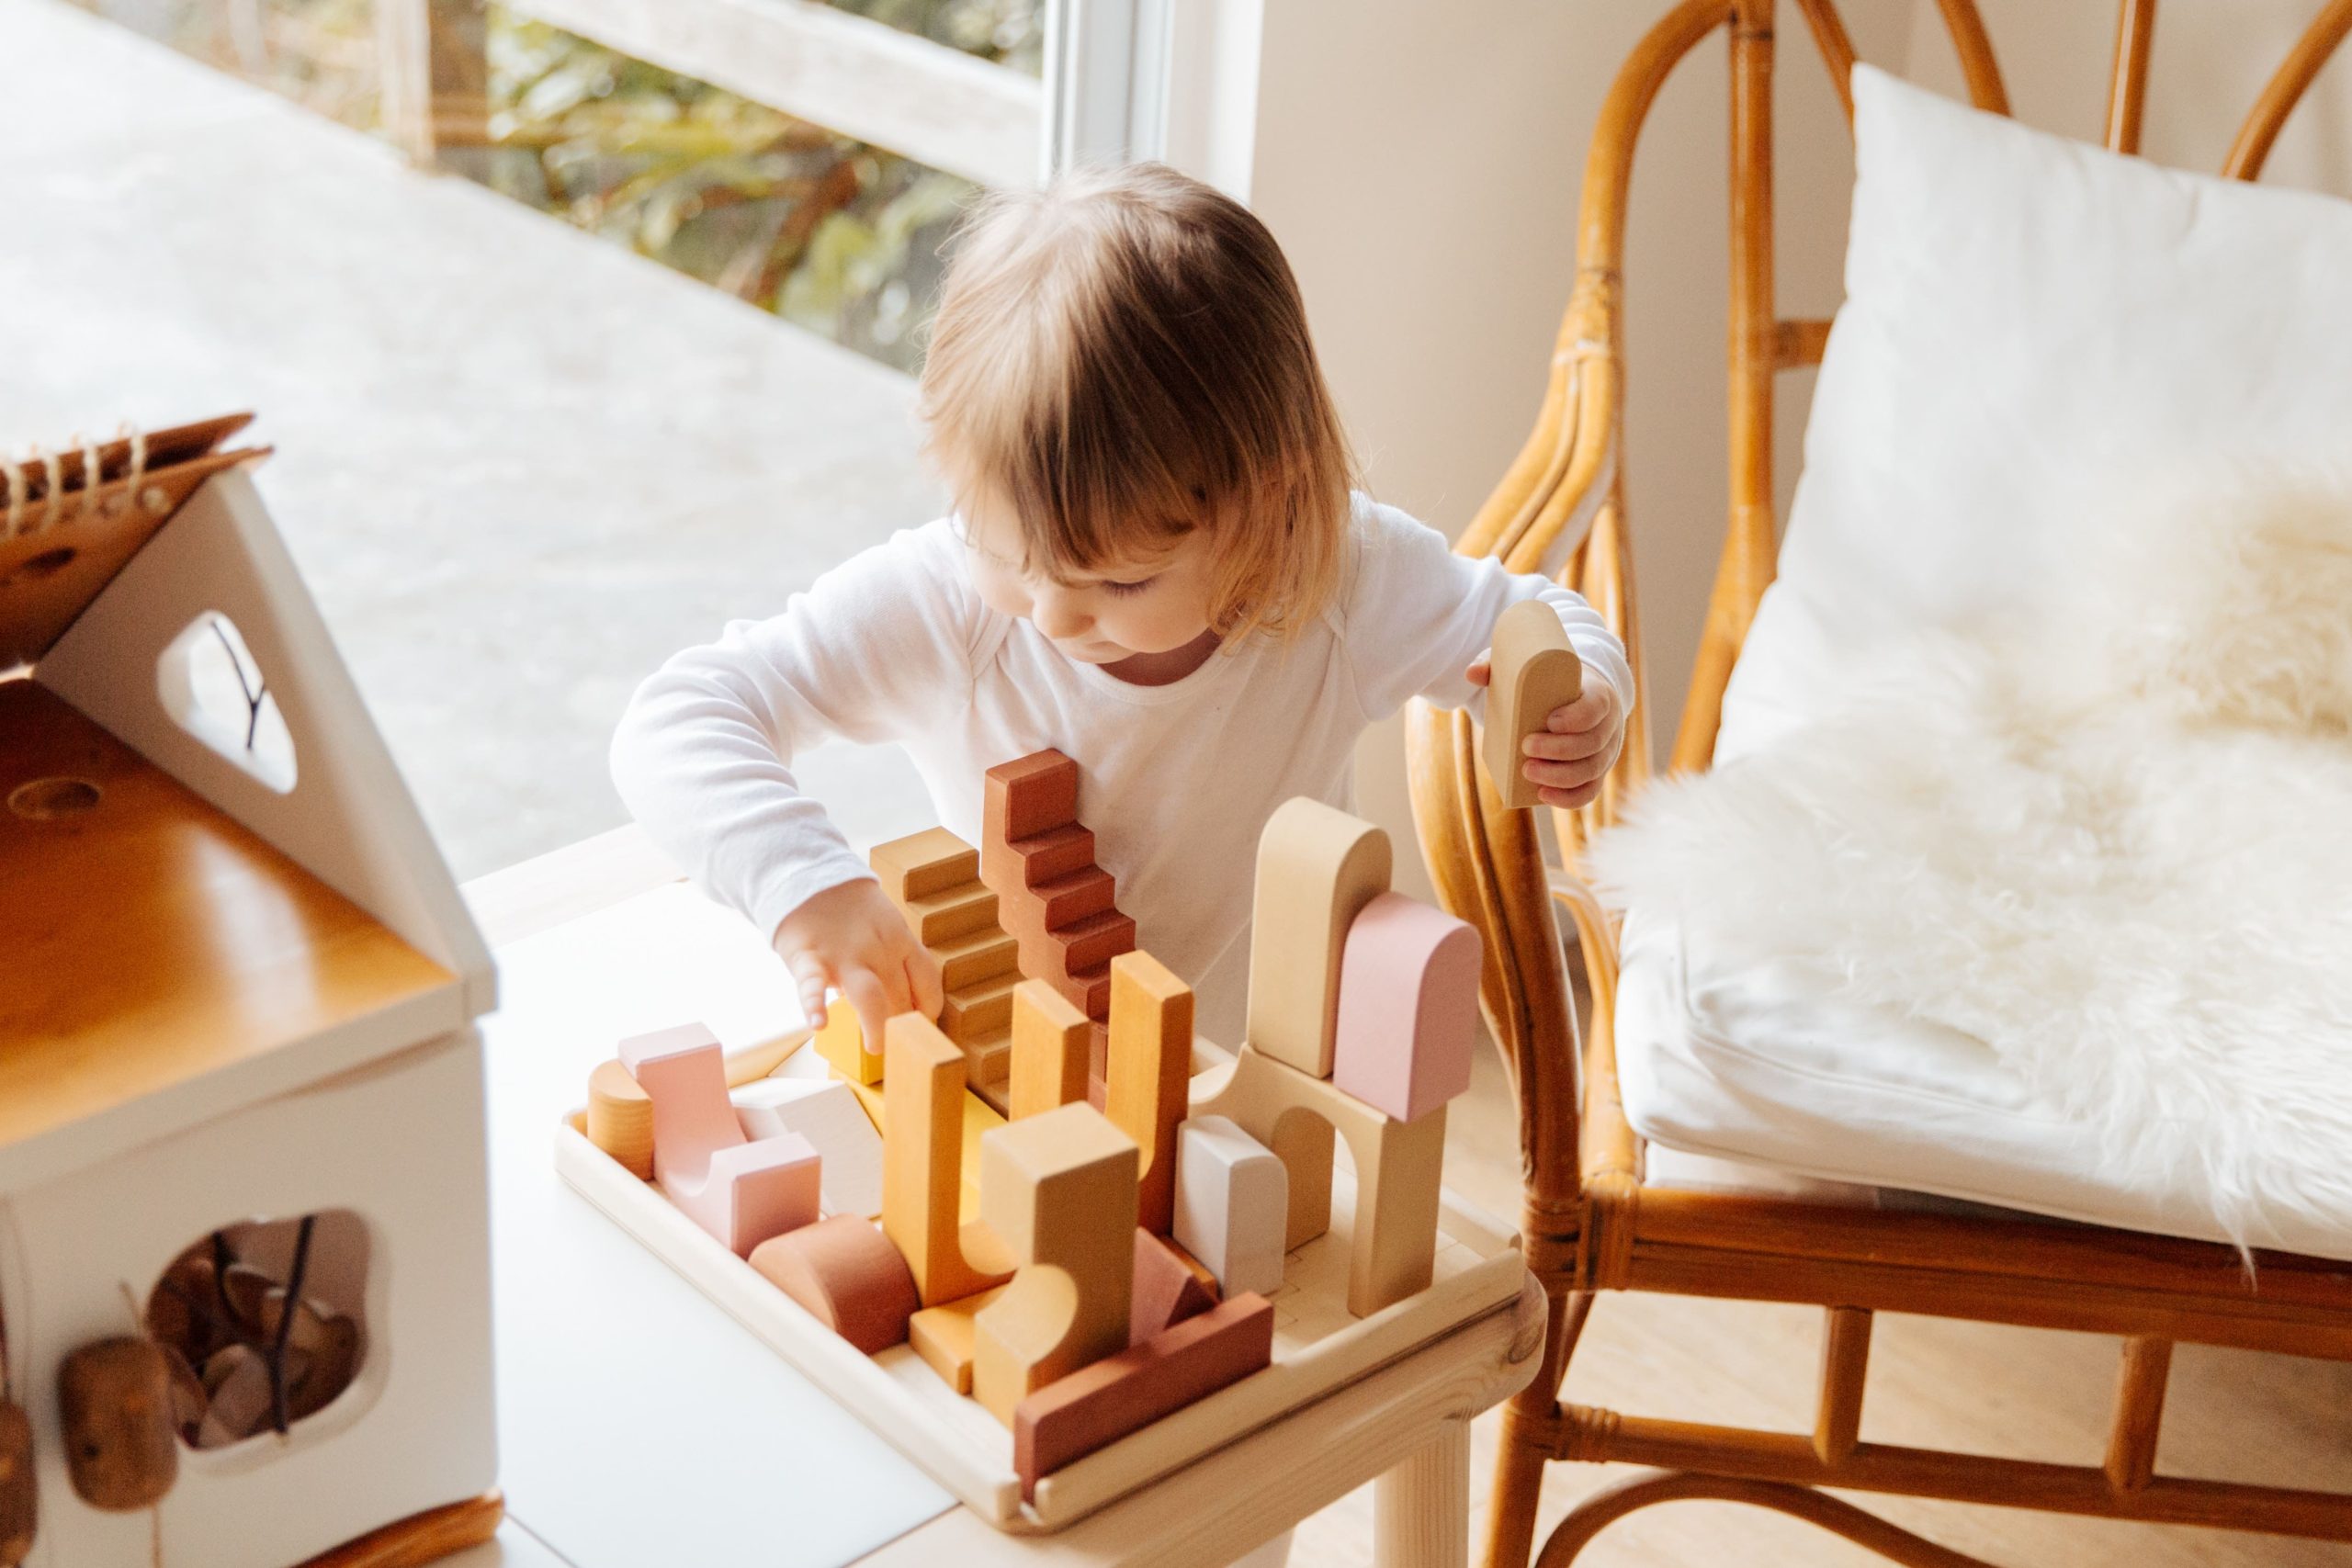 تصویر کودک در حال بازی با اسباب بازی چوبی 